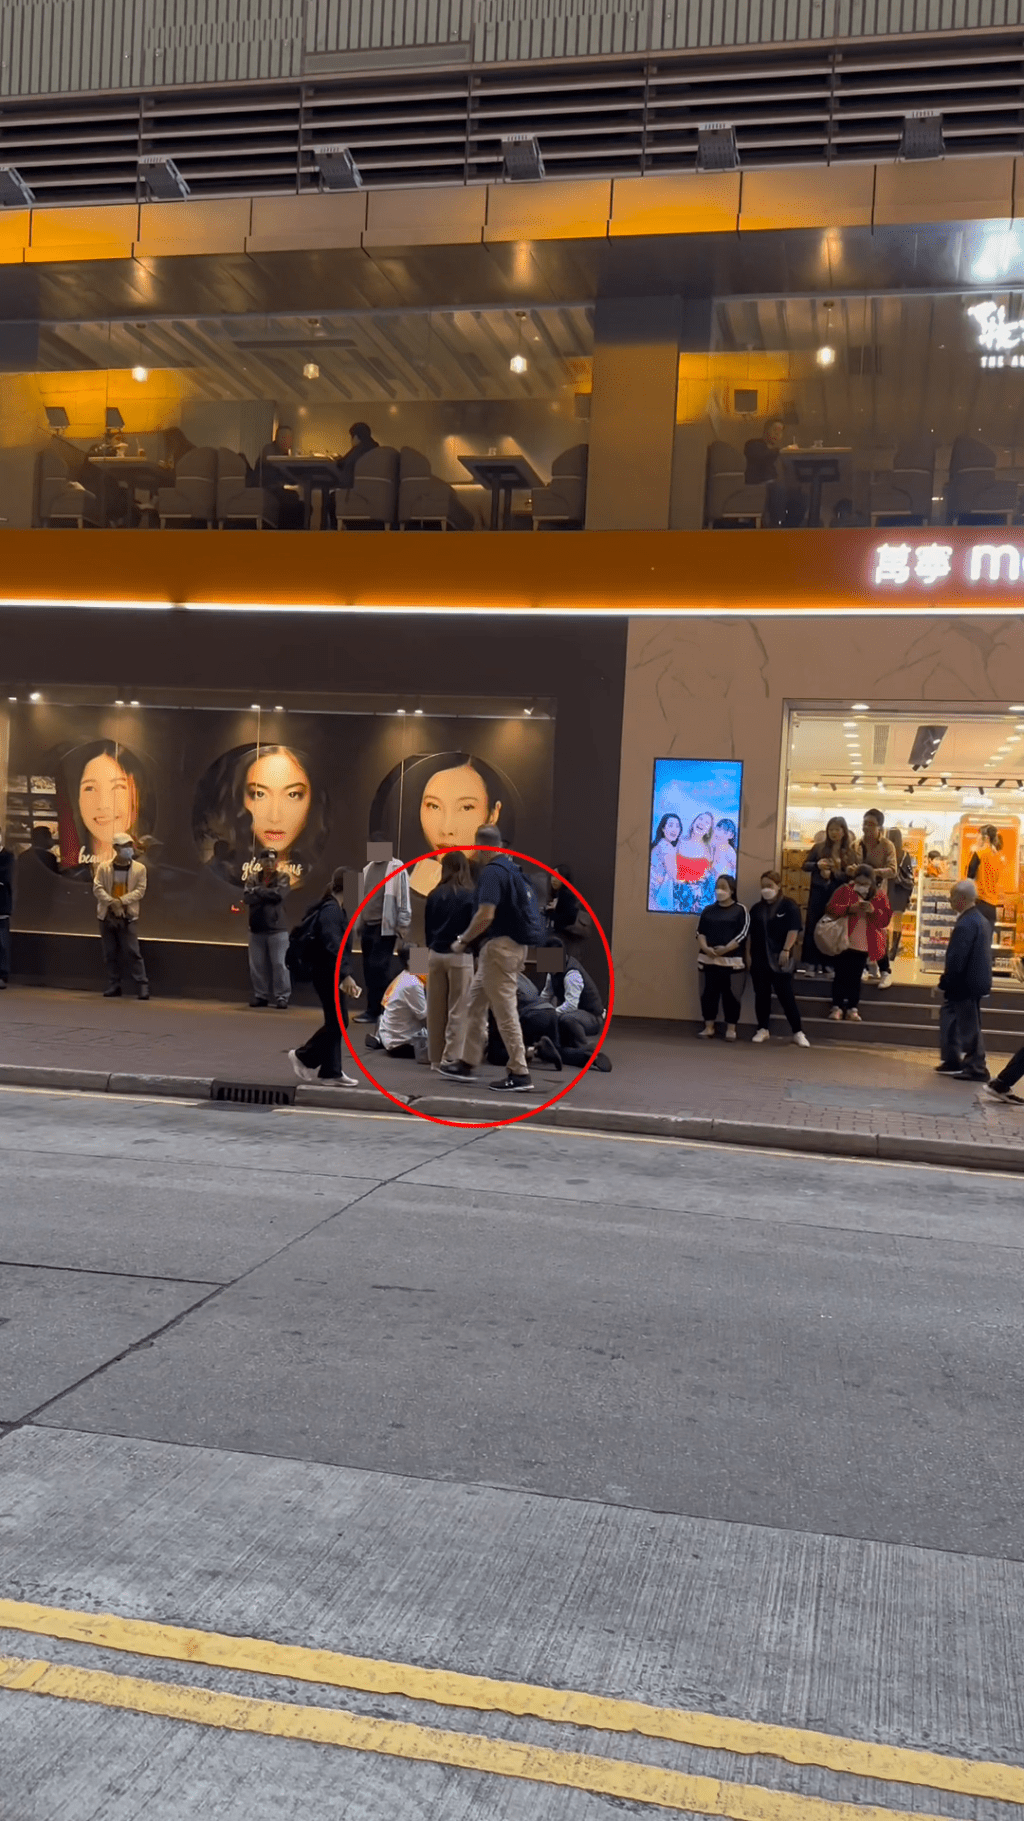 另一段影片看到该花衫男在万宁店门外被制服